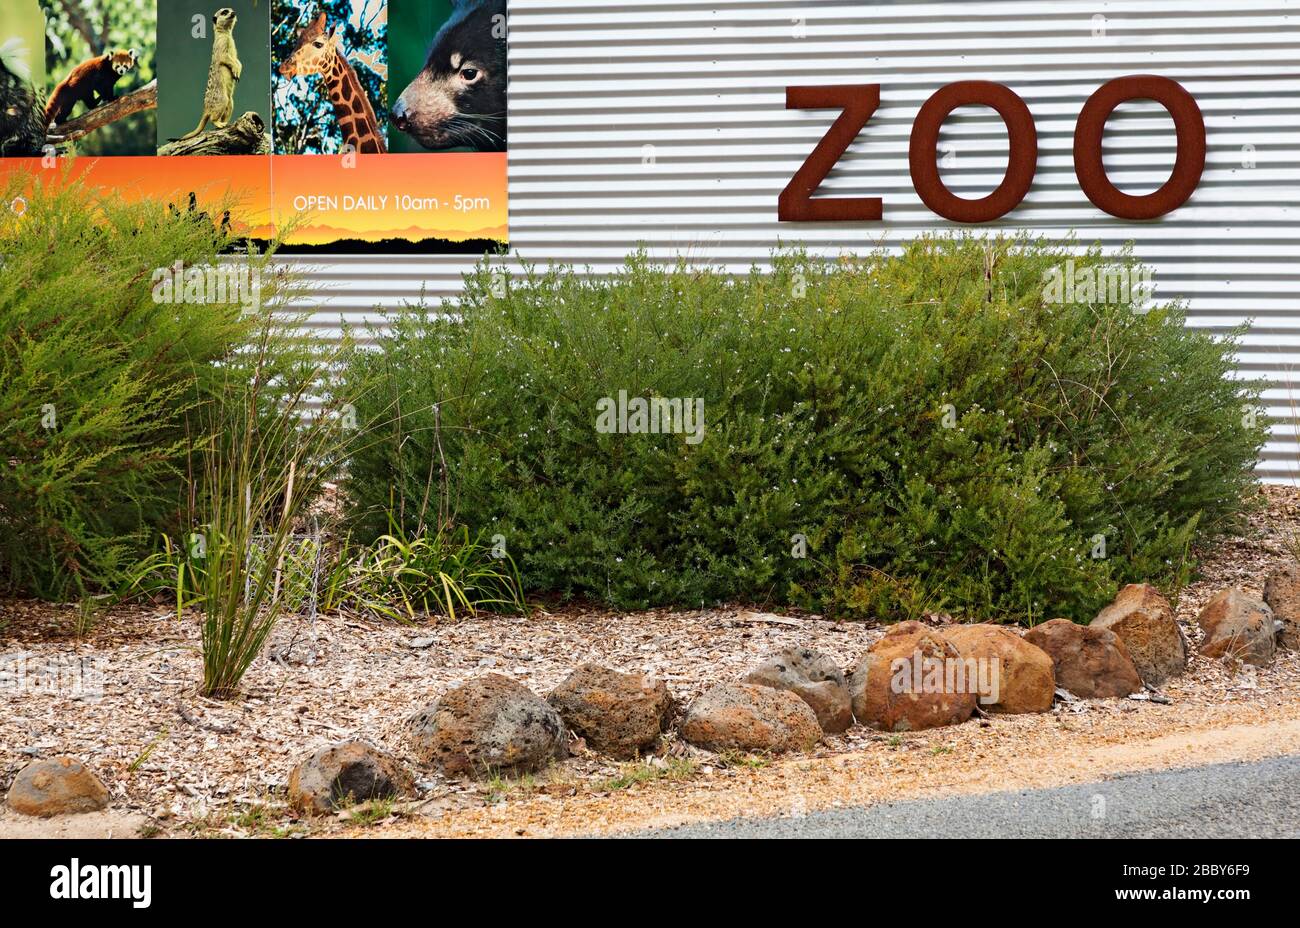 Zoos / Eintritt in Halls GAP Zoo, Victoria Australia. Der Halls GAP Zoo ist der größte regionale Zoo und erstreckt sich über eine Fläche von 53 Hektar. Er befindet sich am Stockfoto